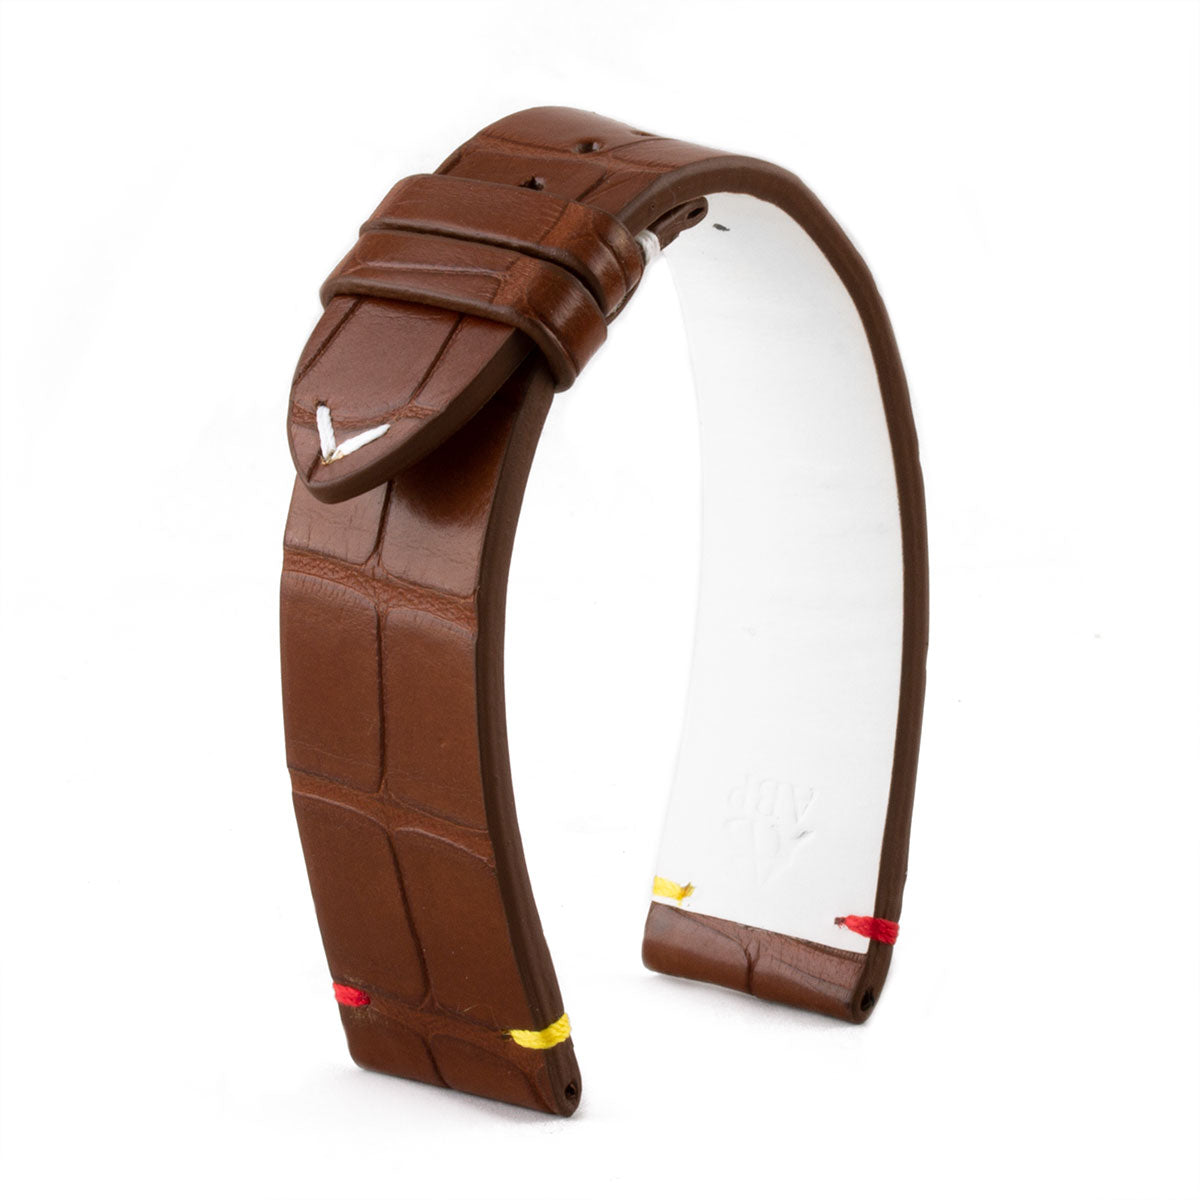 Bracelet-montre cuir - U.S. Flags - Alligator (bleu, marron, rouge) - watch band leather strap - ABP Concept -